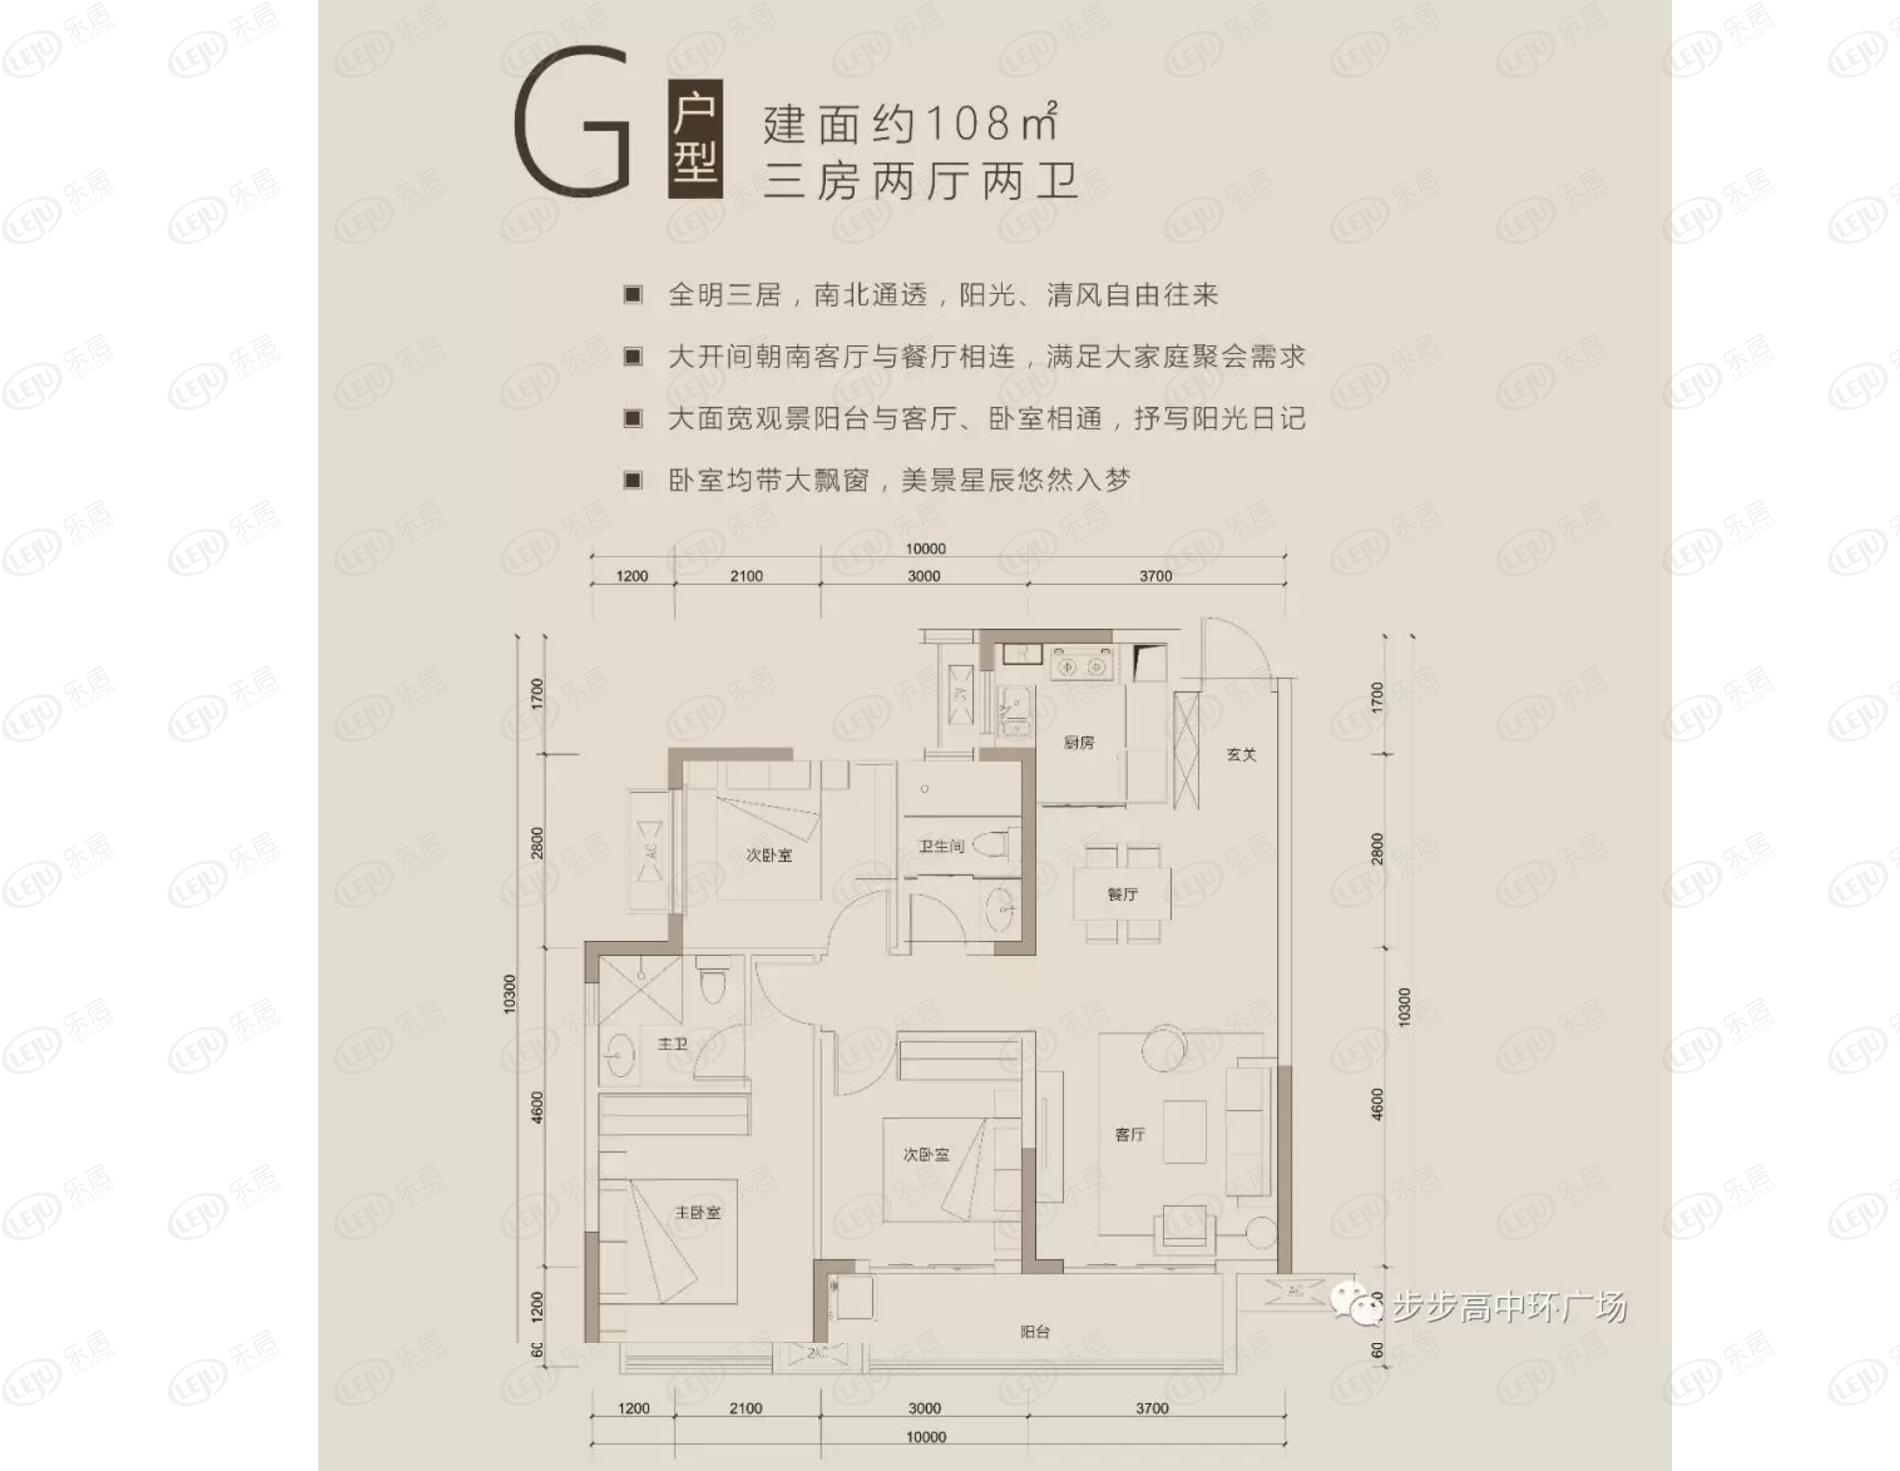 鹤城步步高中环广场住宅,商业,公寓,写字楼 户型面积98~143㎡